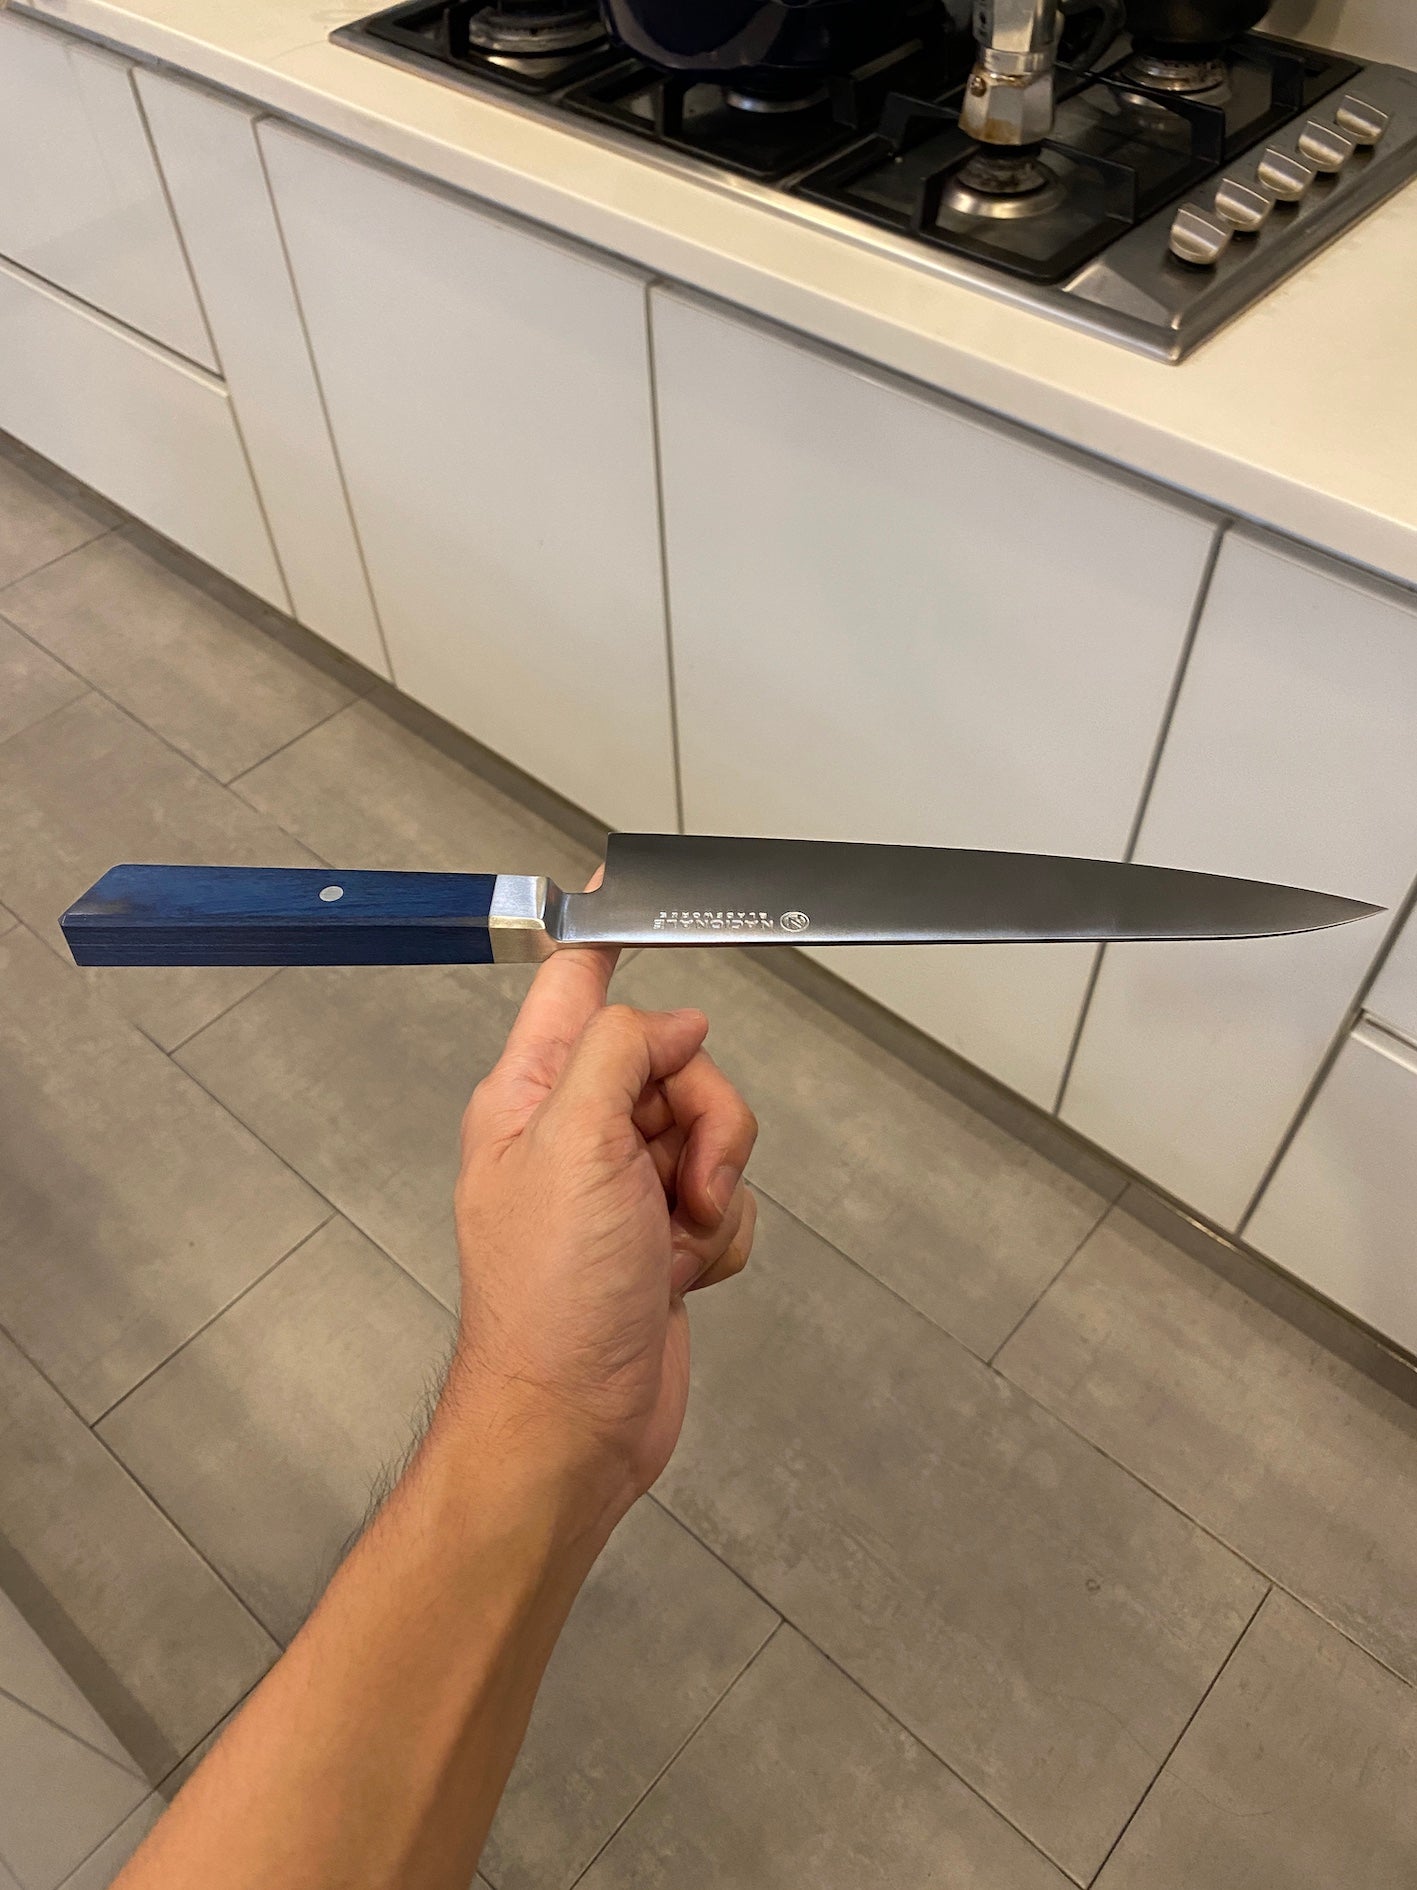 215mm Chef's Knife. Sandvik 14c28n. Blue Pakkawood Handle